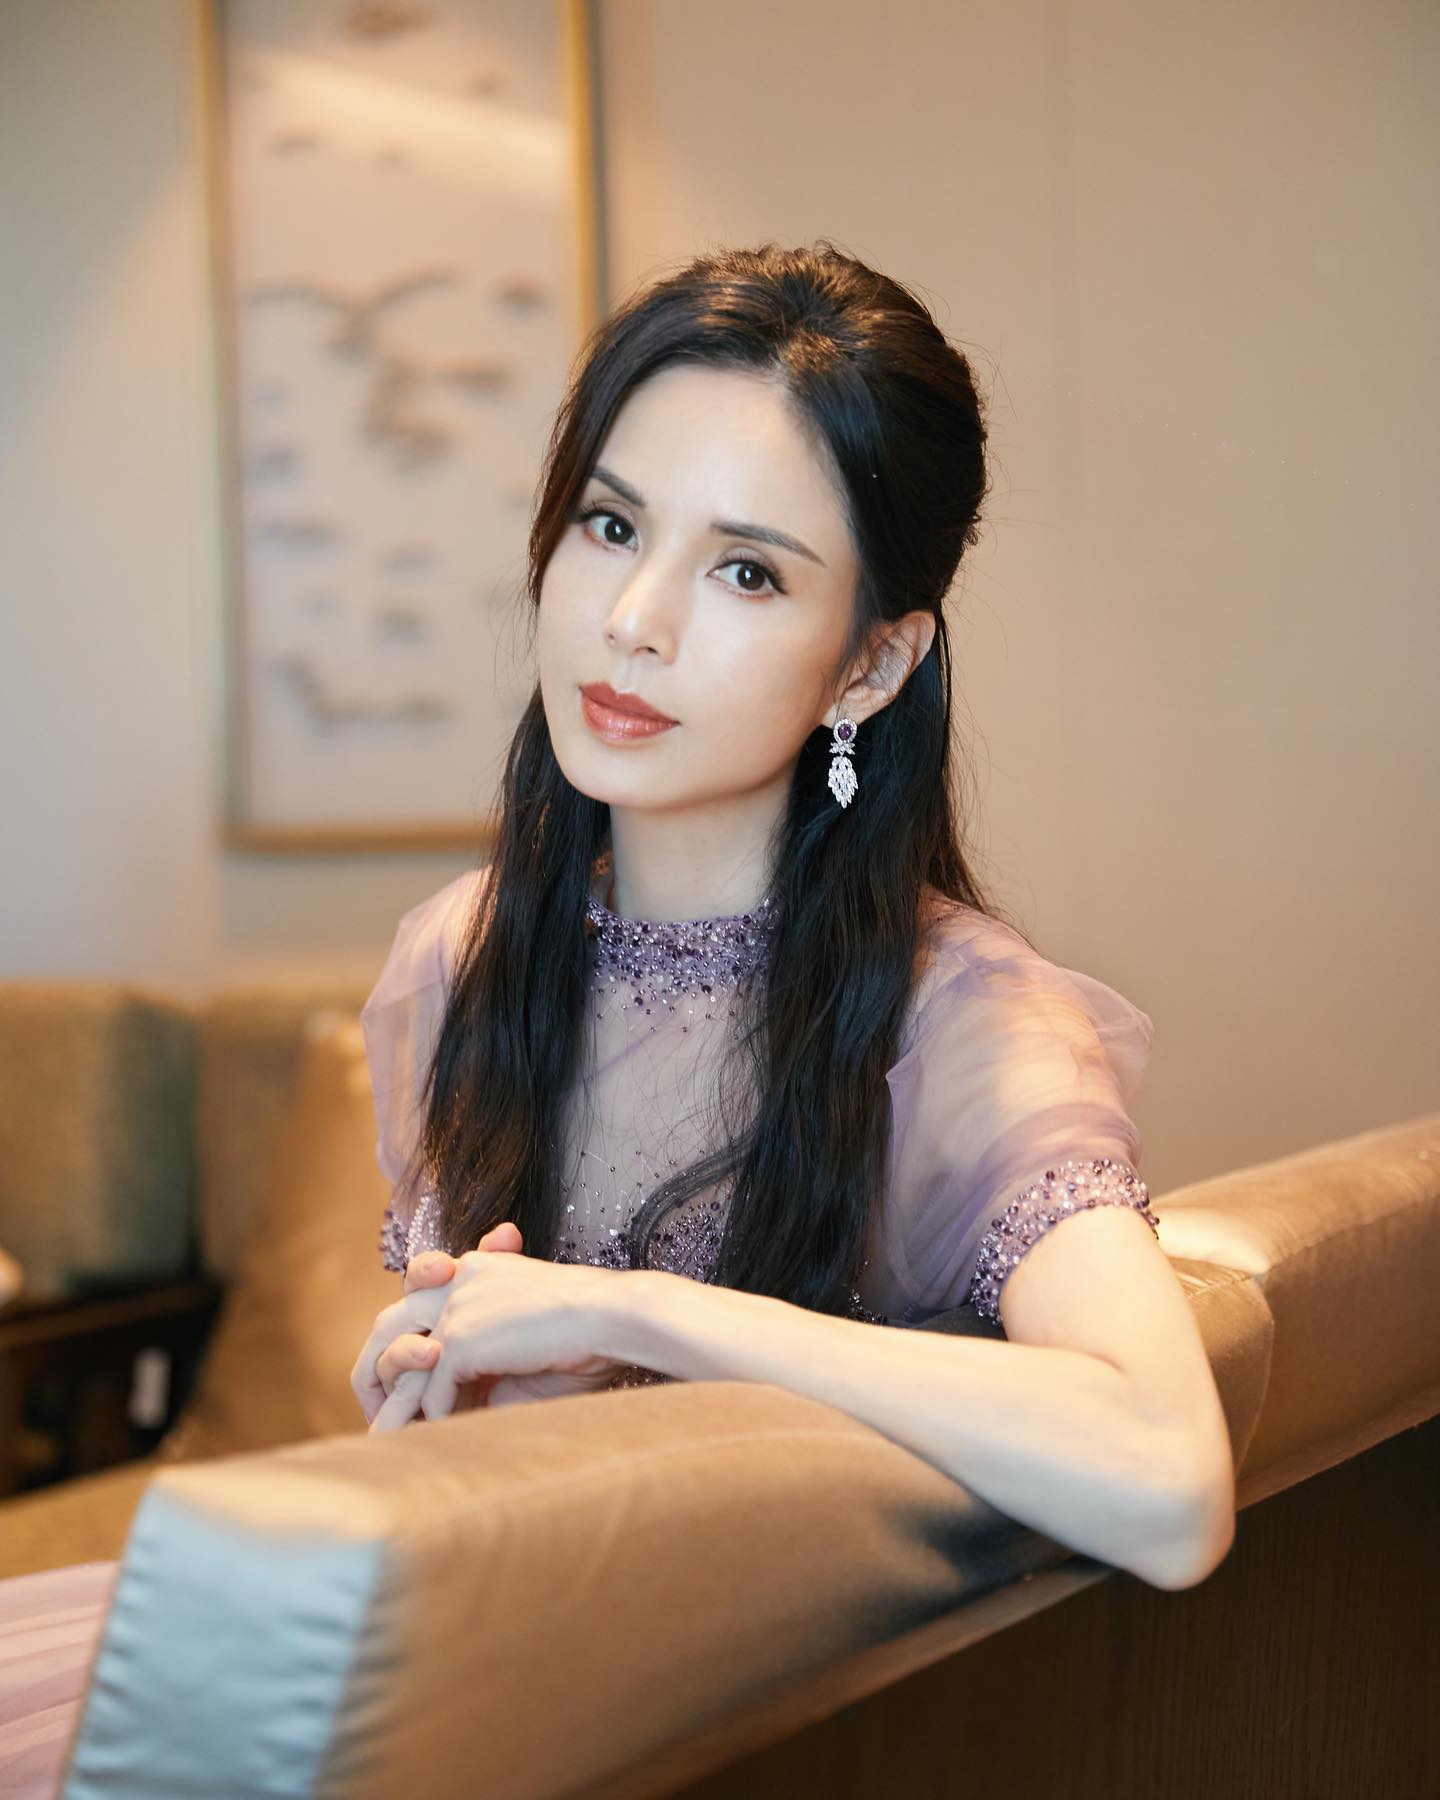 'Tiểu Long Nữ' Lý Nhược Đồng bị chê bai vì không chồng con